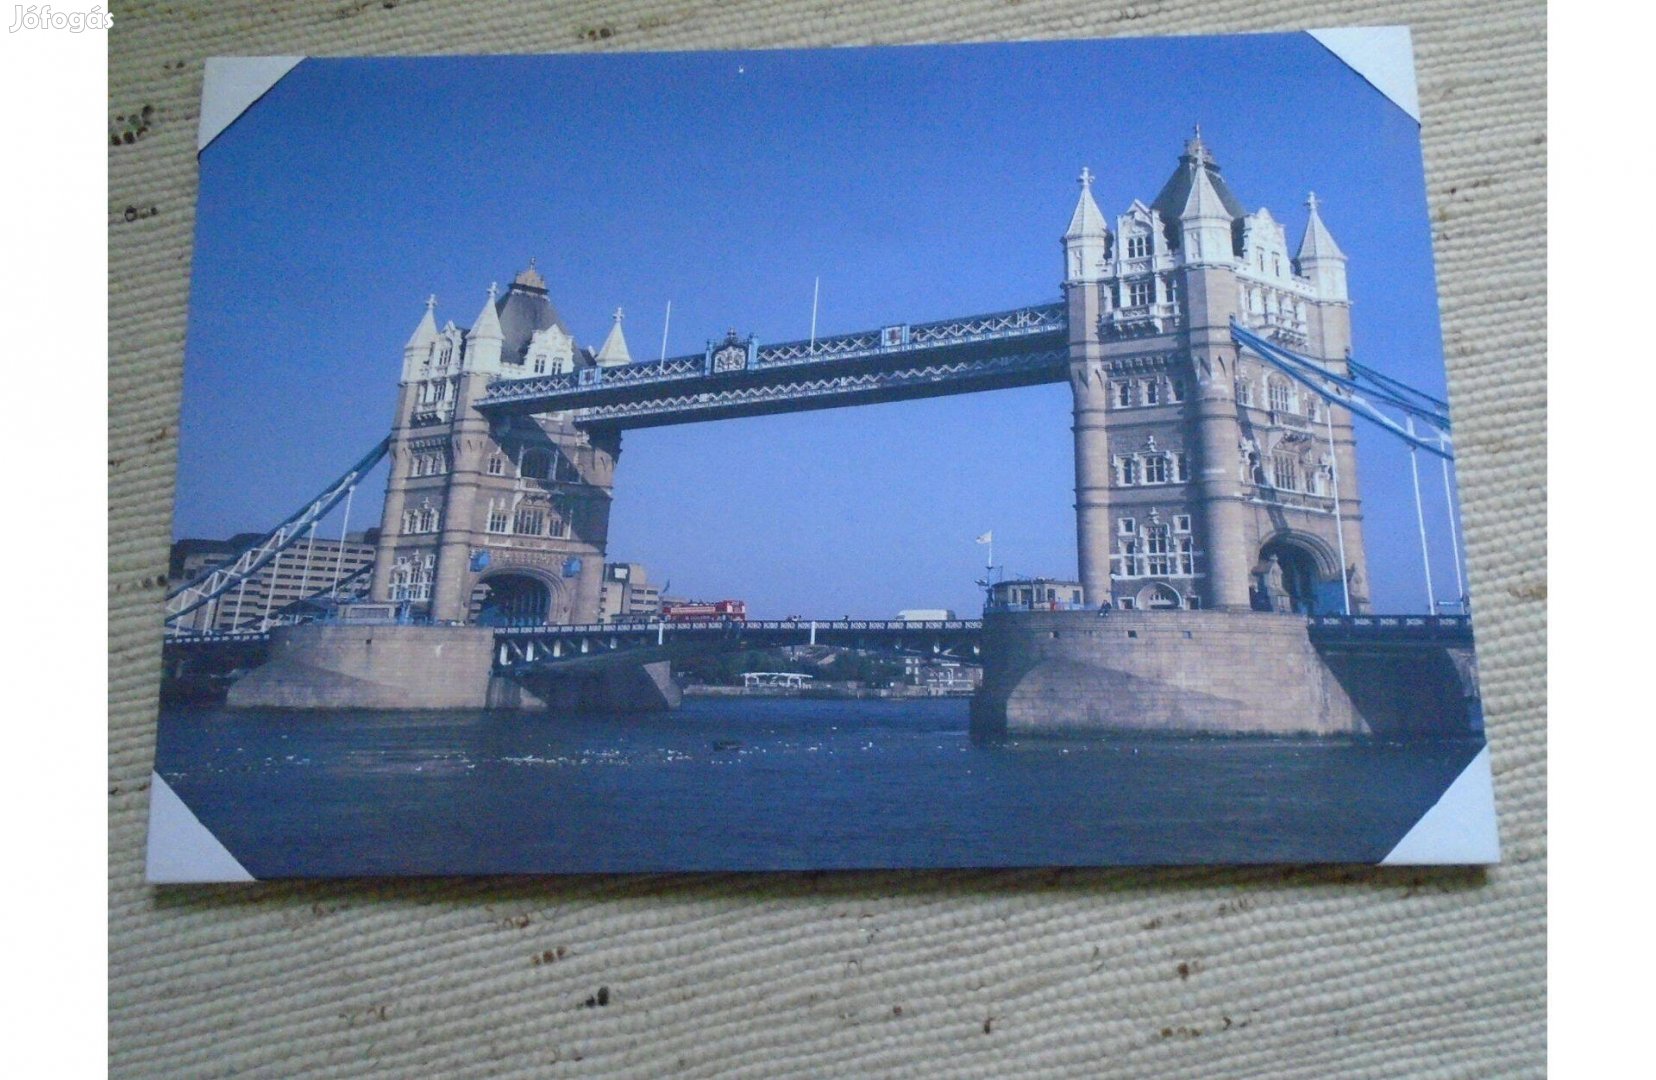 Tower Bridge fali kép csomagolt, új - felül pici kis szépség hibával